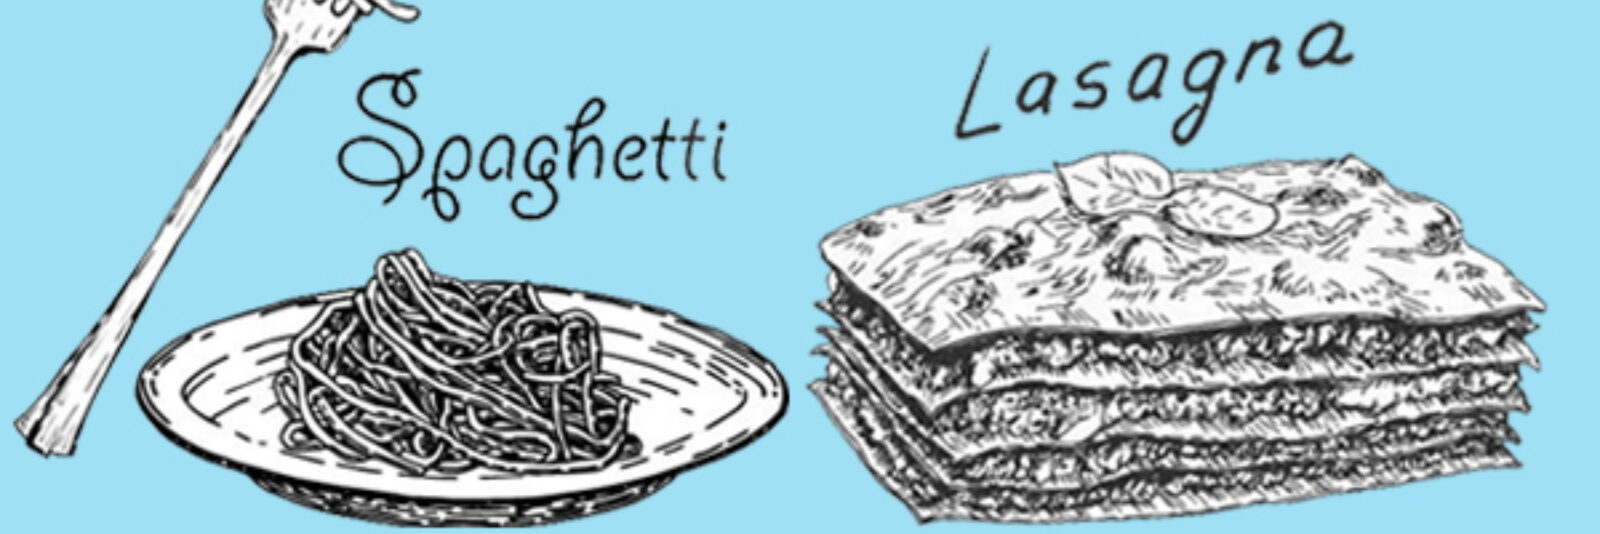 Lasagna en Spagetti